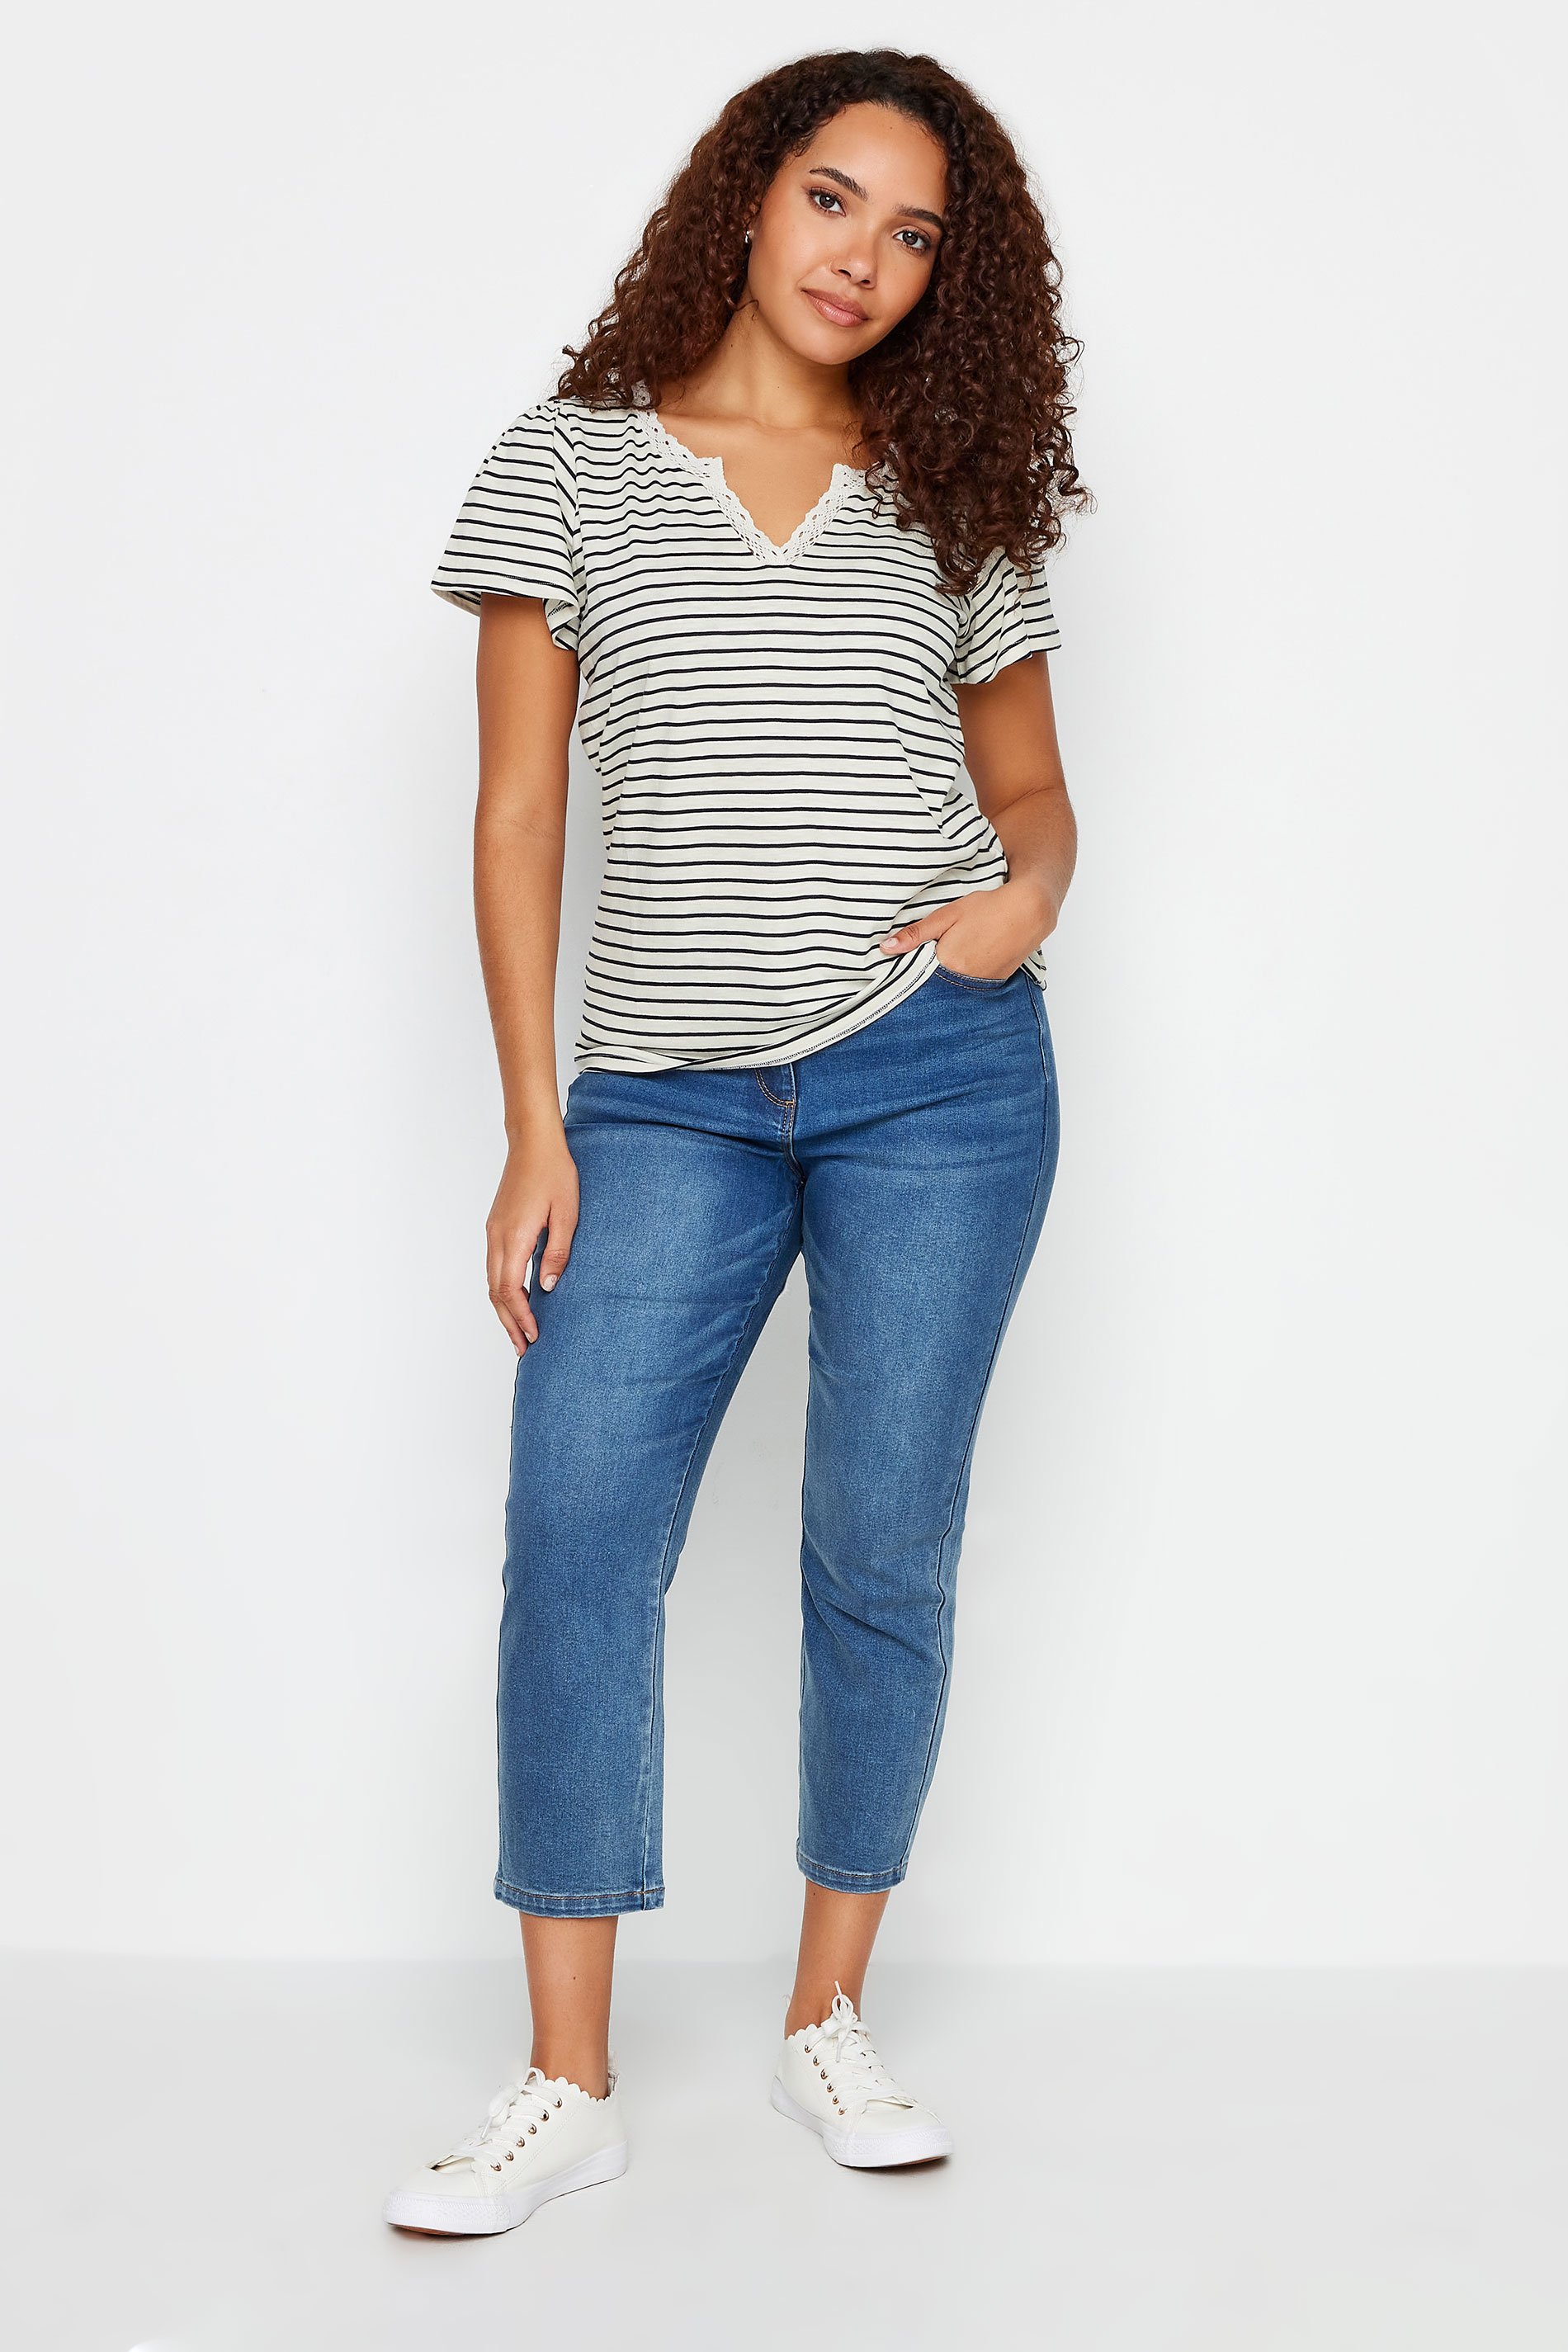 M&Co Black & White Striped Lace Trim T-Shirt | M&Co 2